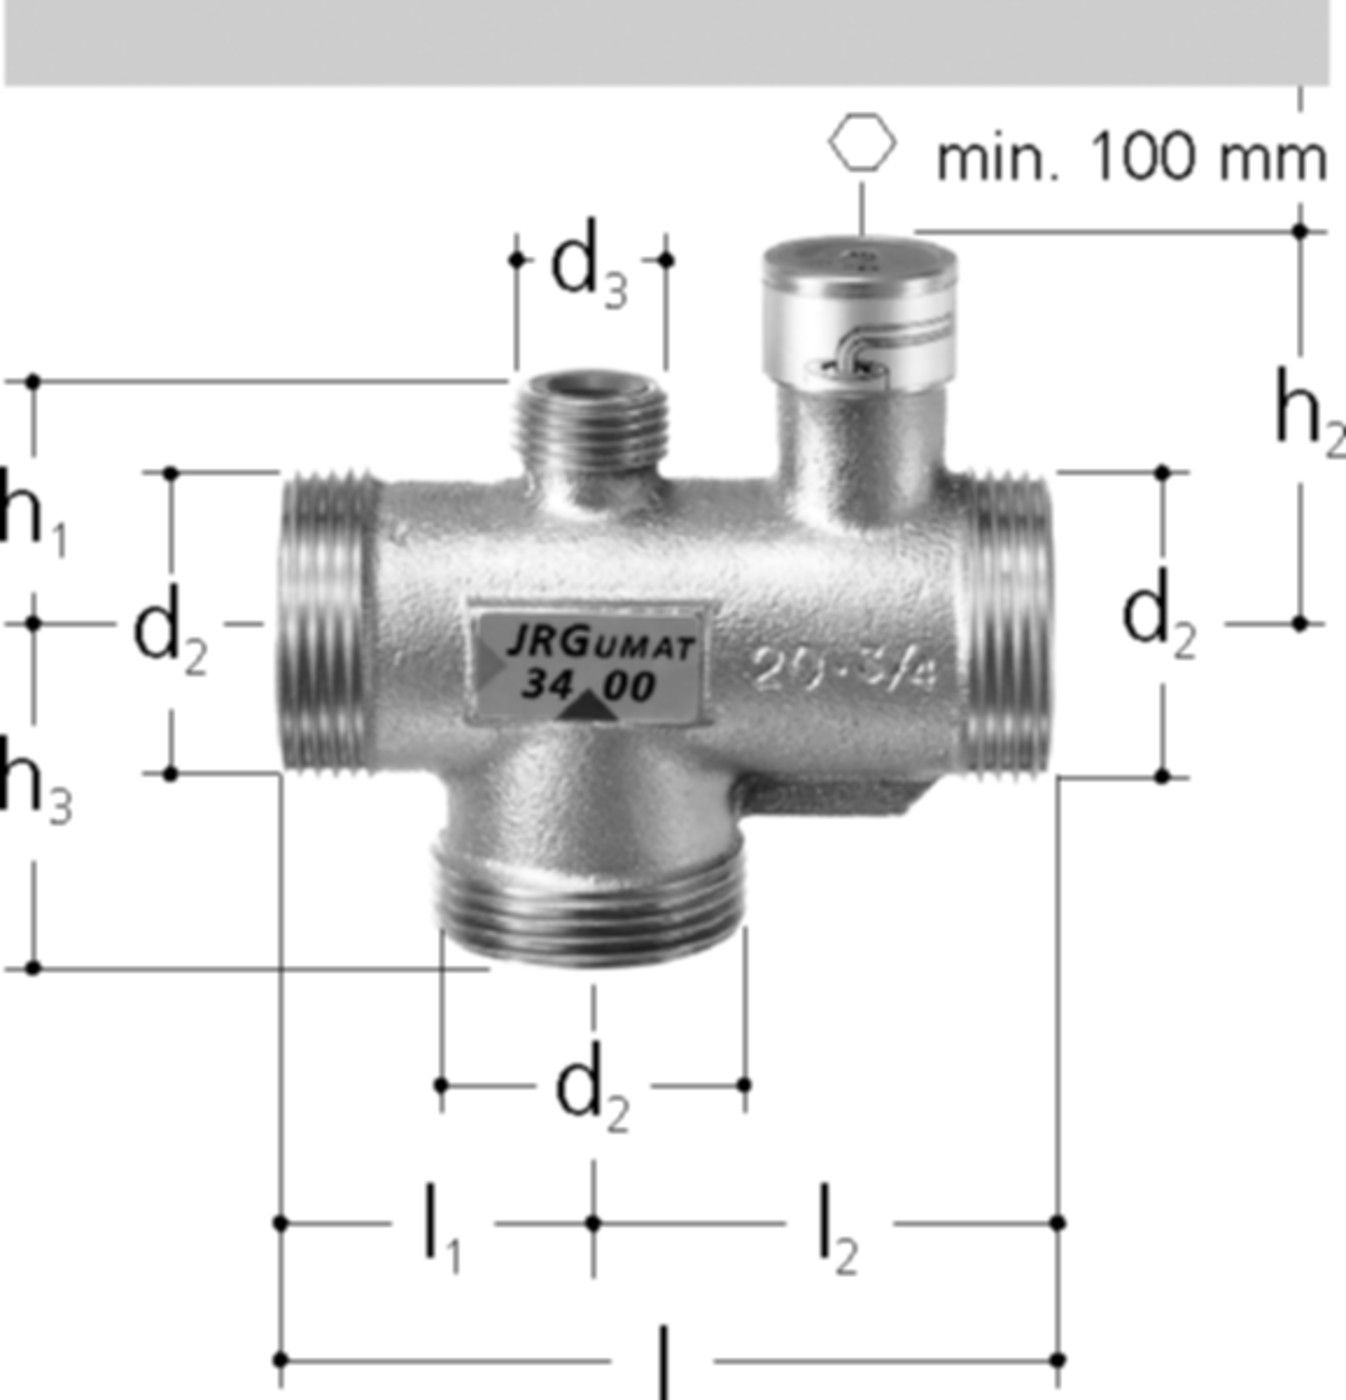 JRGUMAT Thermomischer PN 10 1" DN 25 70°C 3400.938 - JRG Armaturen